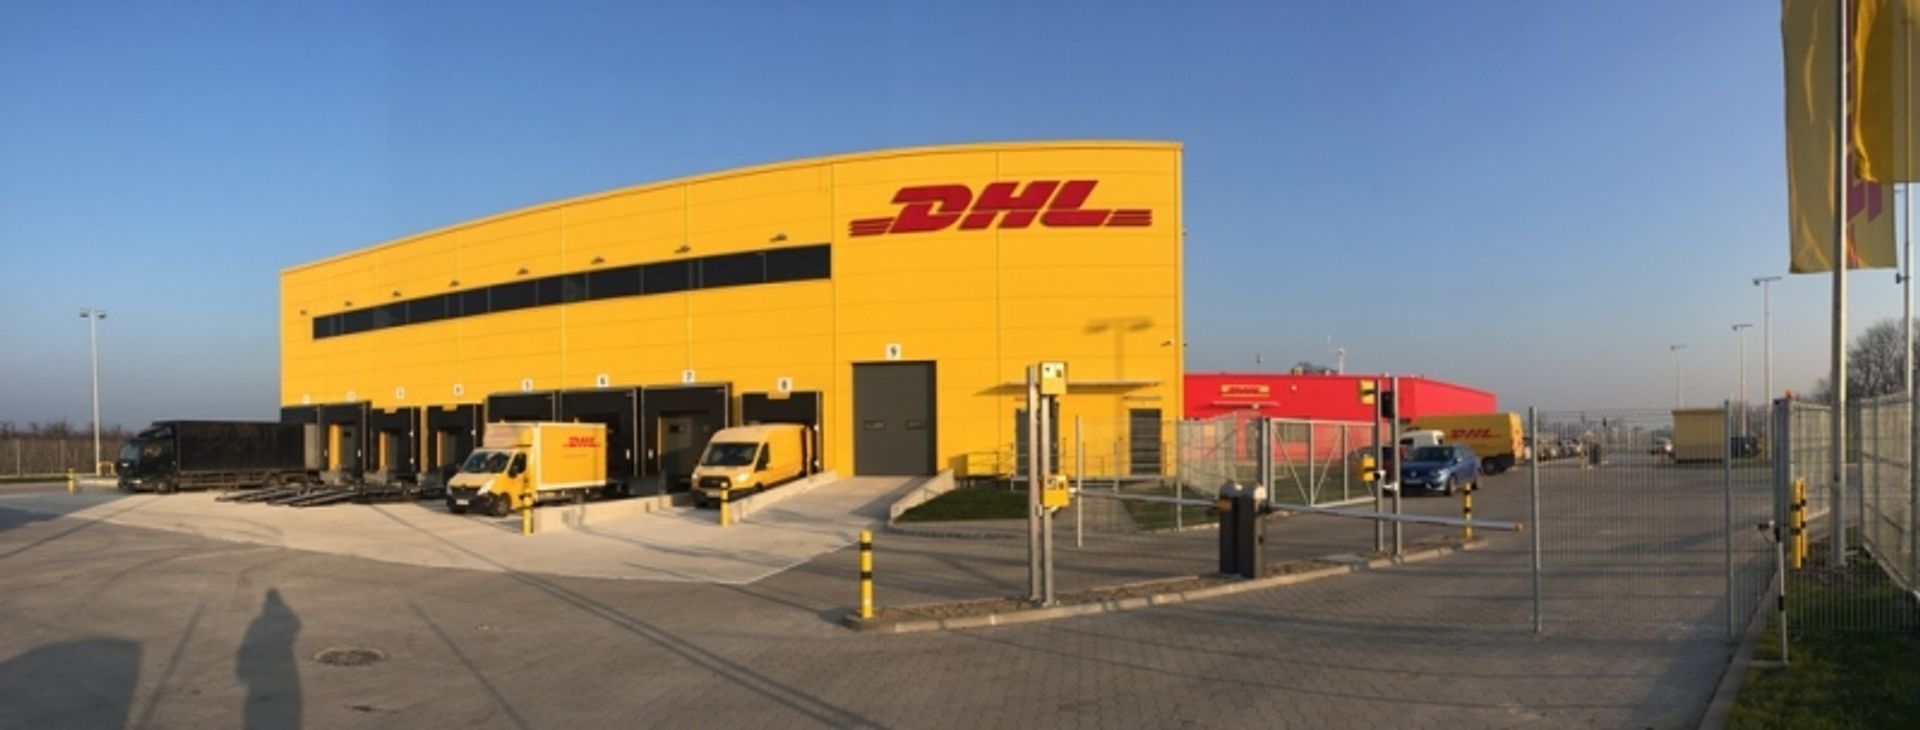  DHL Express zrealizował nową inwestycję we Wrocławiu